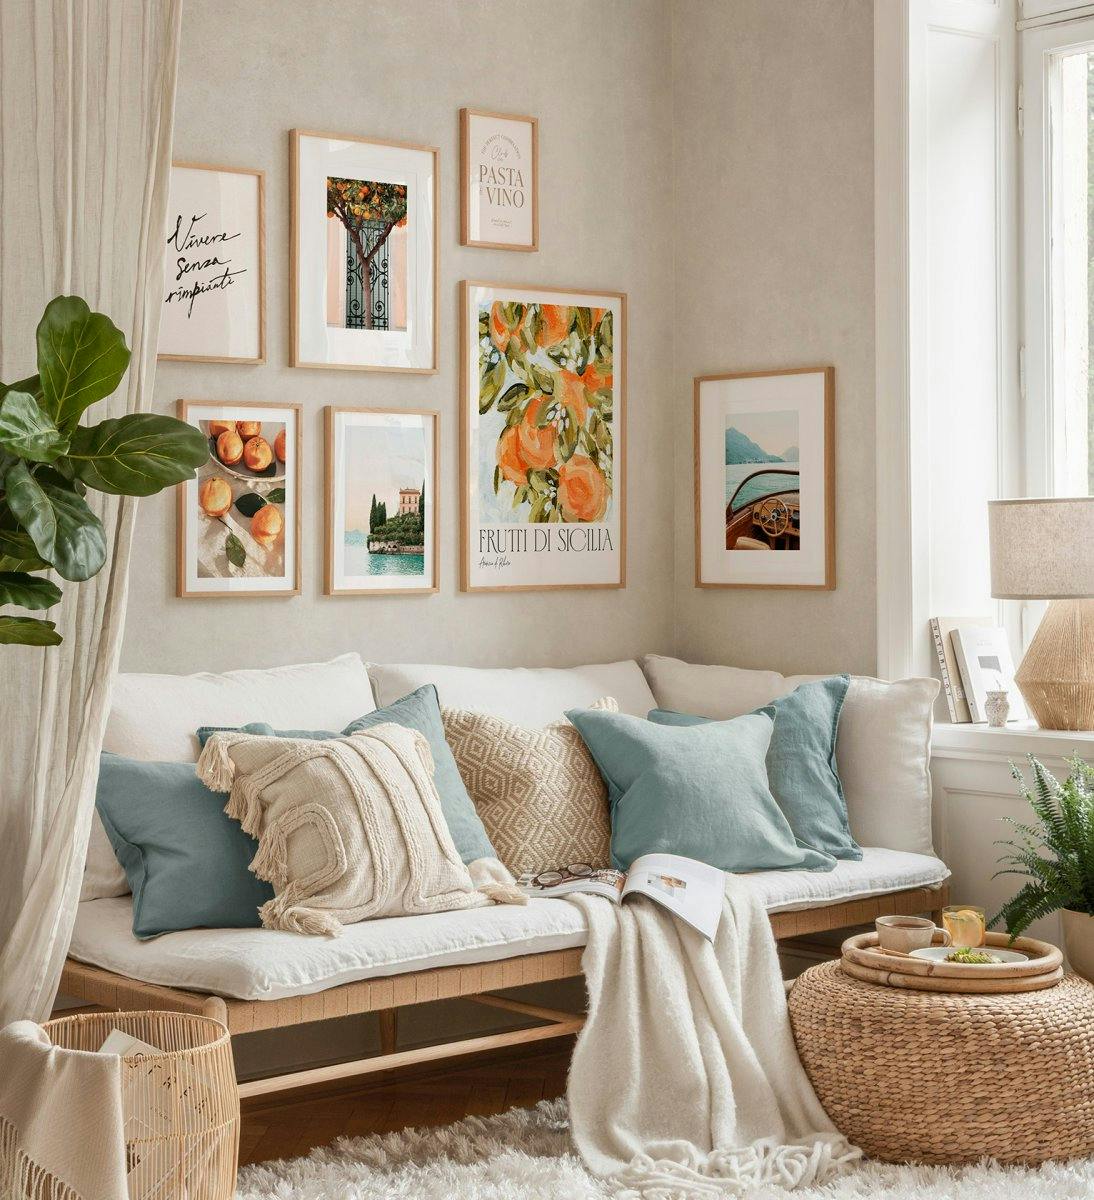 Fotowand met motieven uit Italië en het Como-meer in massief eiken lijsten. Perfecte stijl voor de woonkamer.